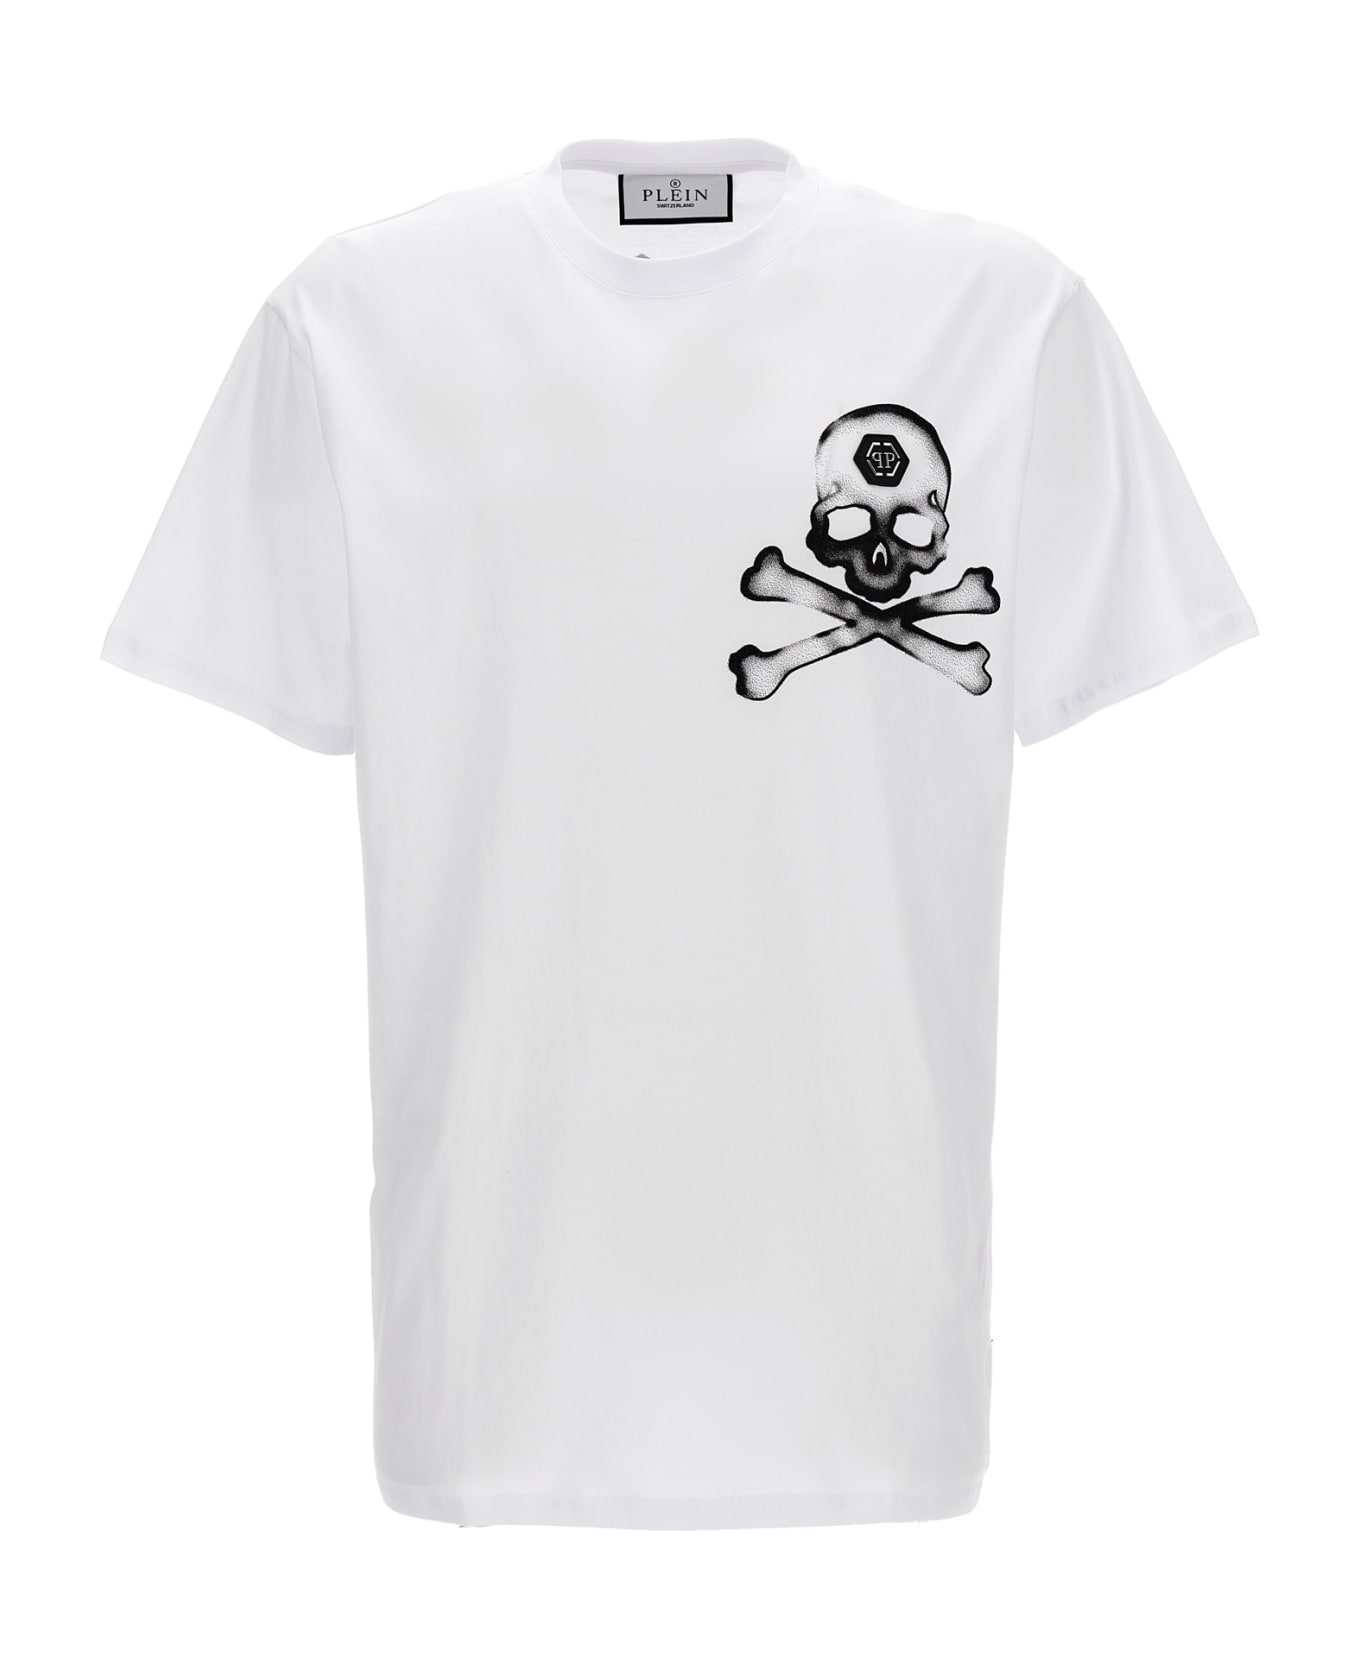 Philipp Plein 'gothic Plein' T-shirt - White/Black シャツ